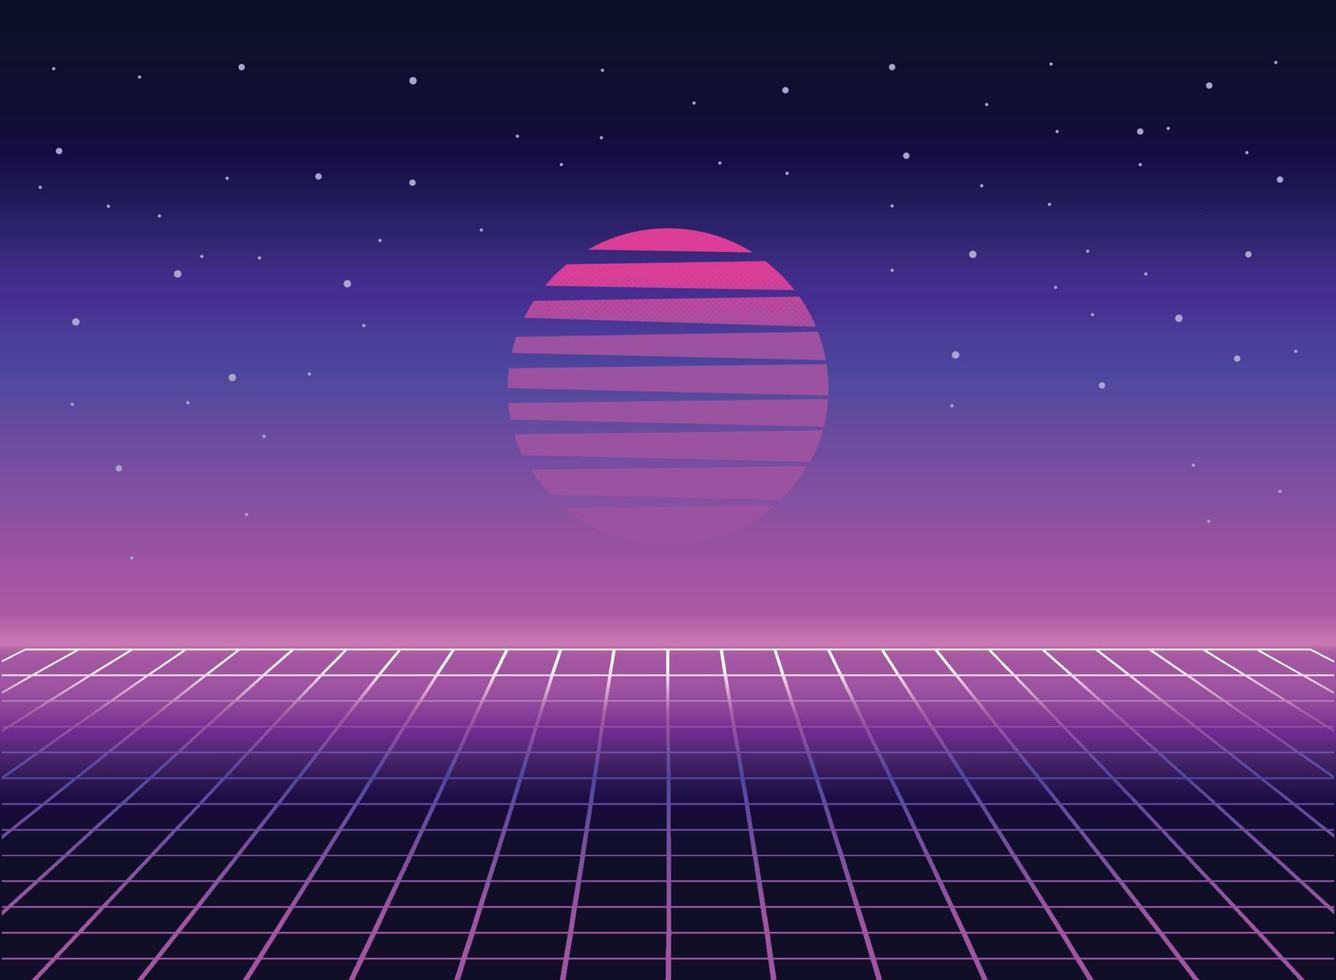 Retro 80s sci-fi futuristic style background. Vector retro futuristic synth wave illustration in 1980s posters style. Retro Nostalgic vaporwave cyberpunk artwork with vibrant neon colors